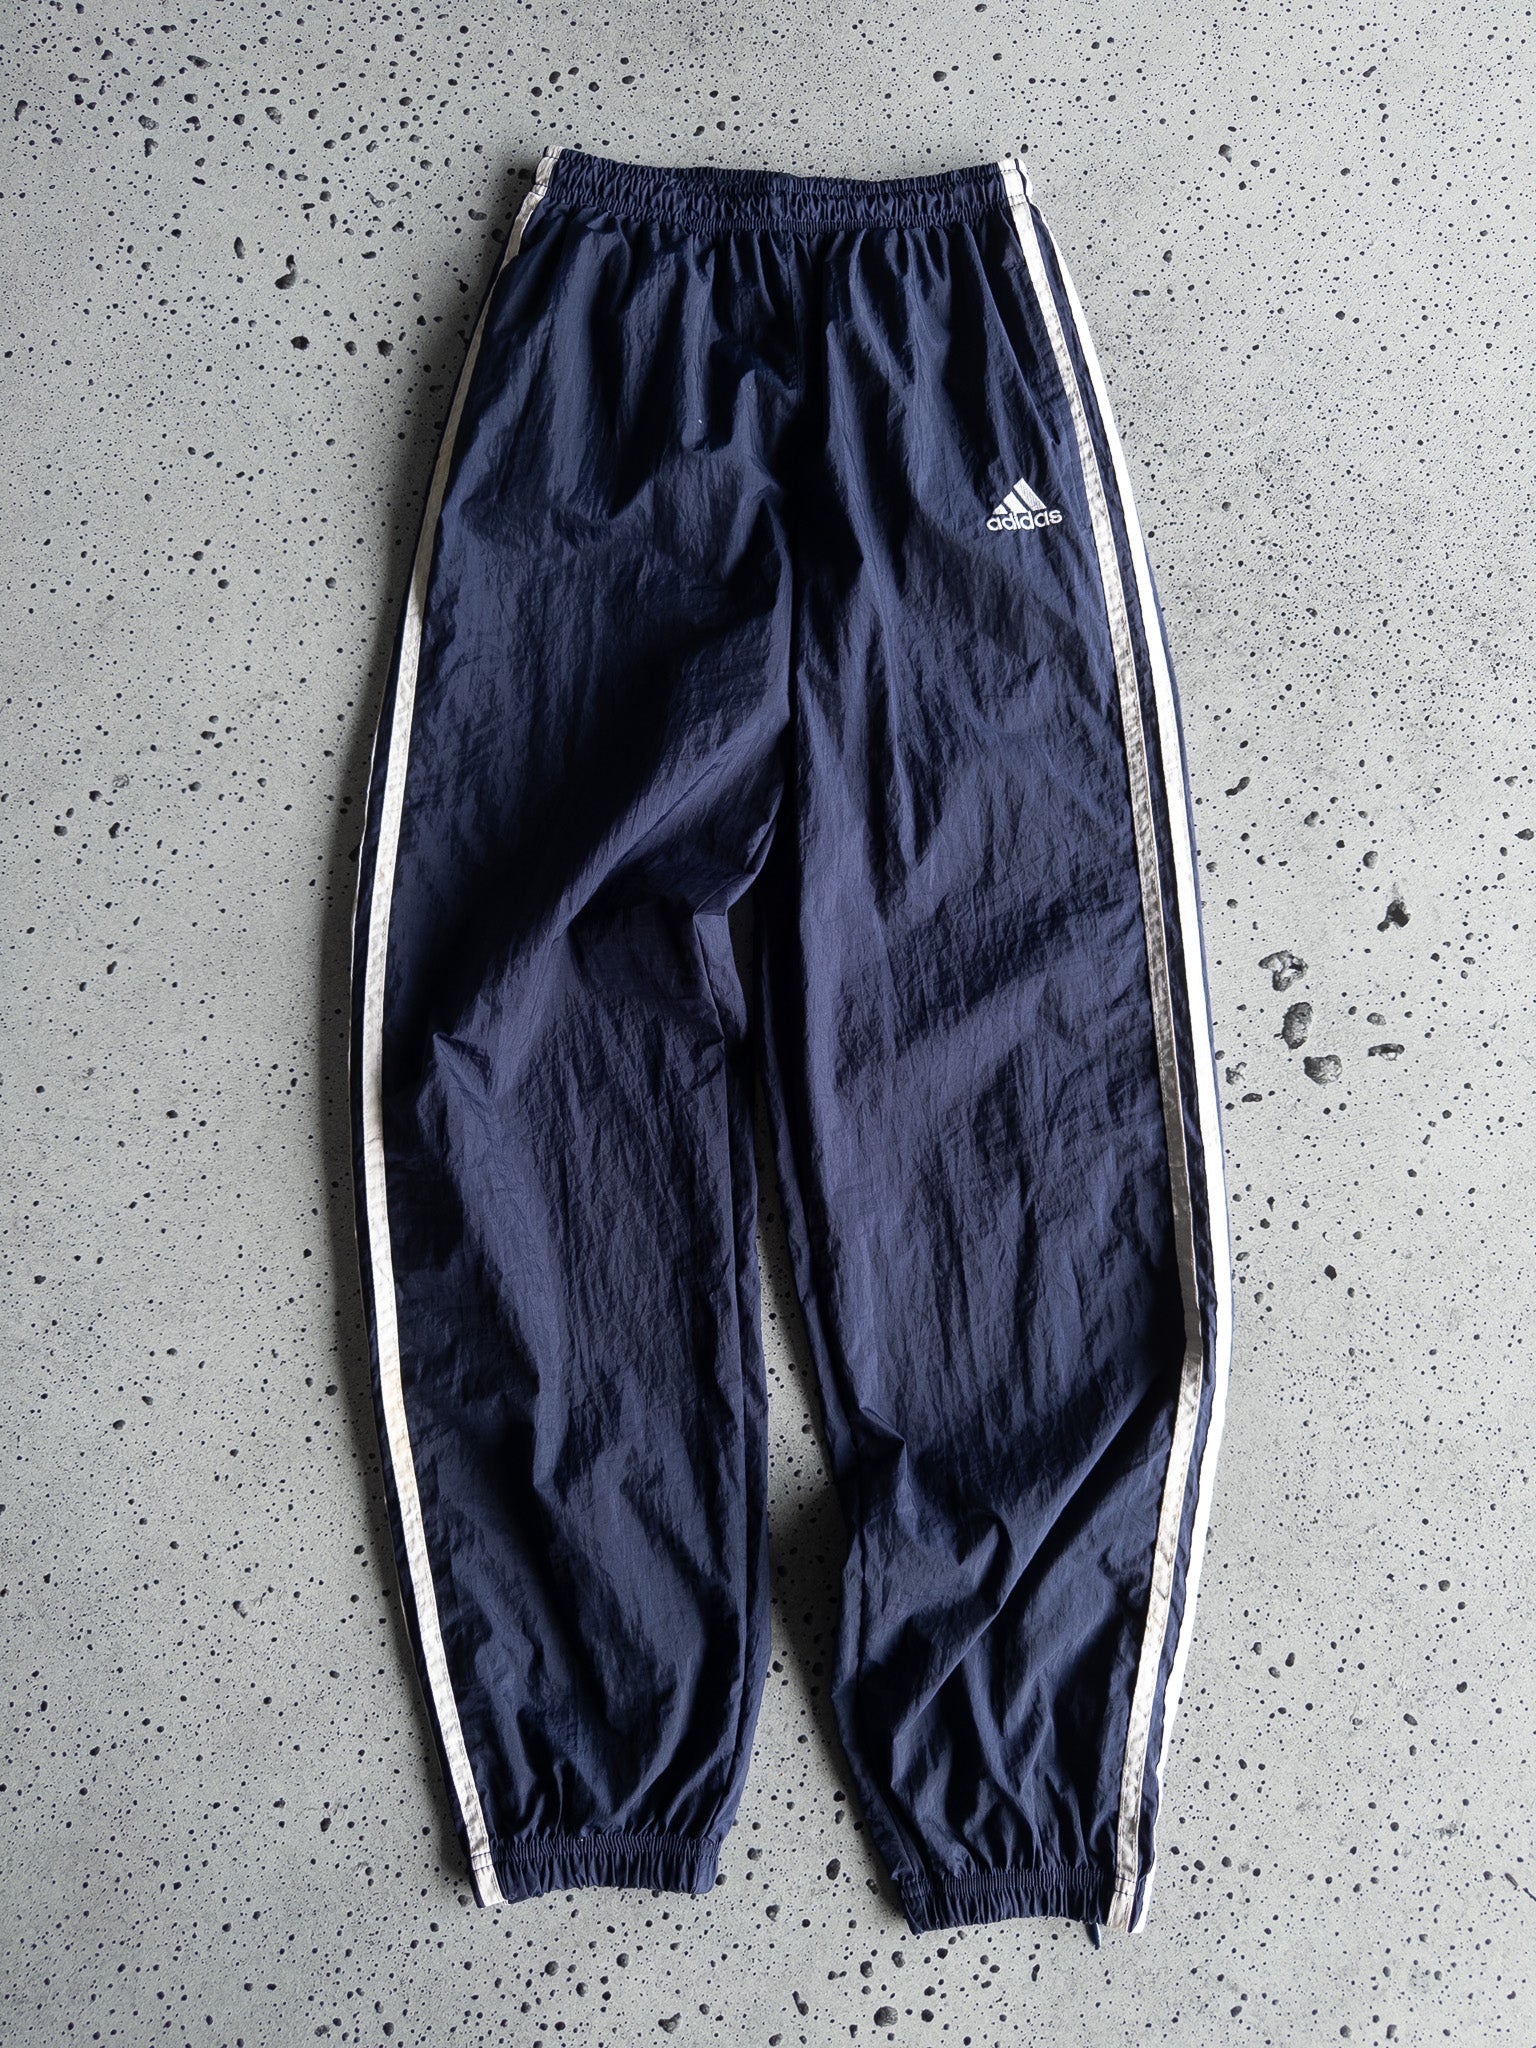 Vintage Adidas Track Pants (S)